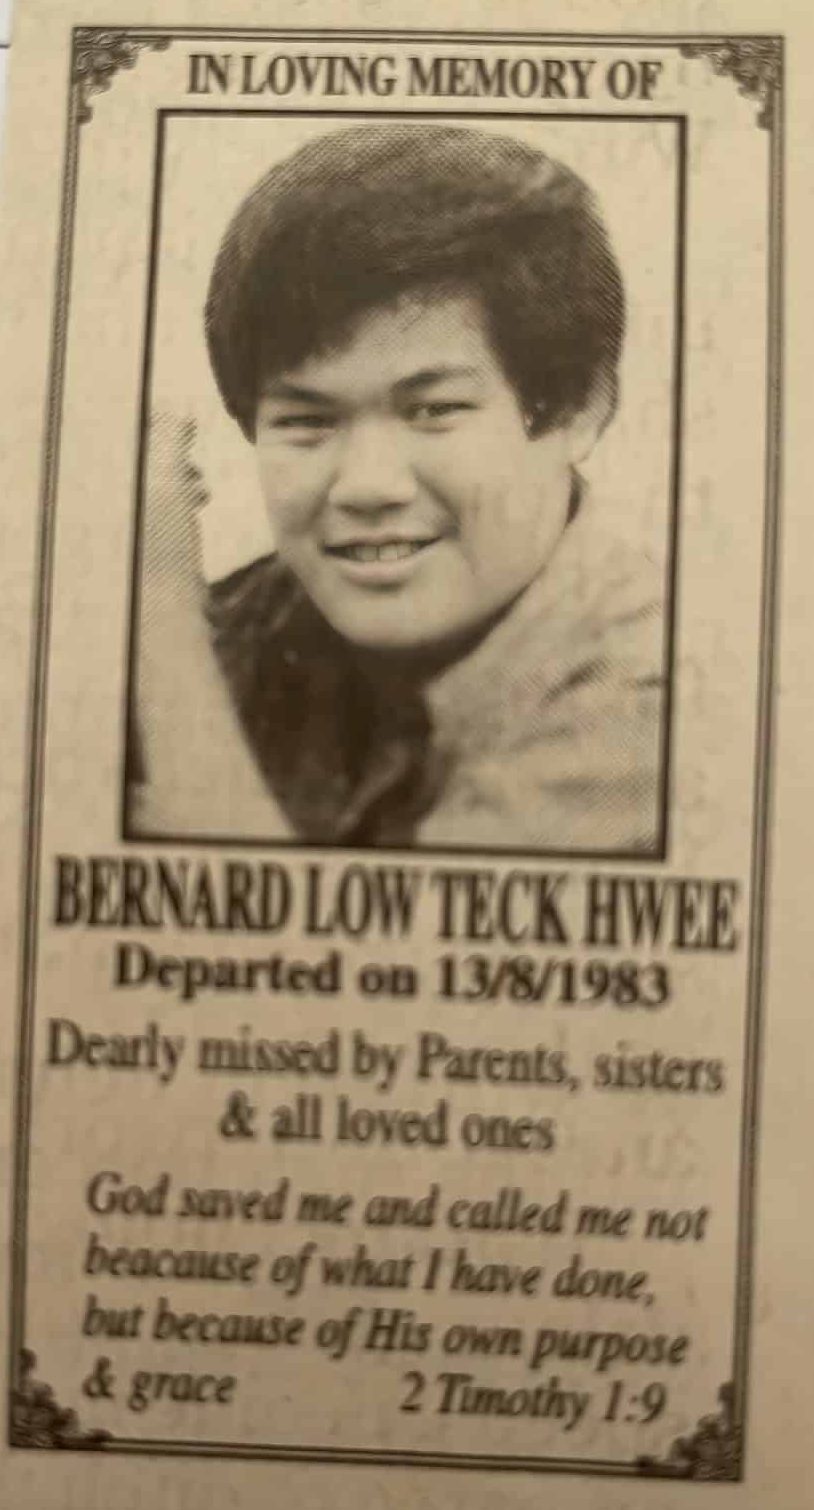 Bernard Low murder